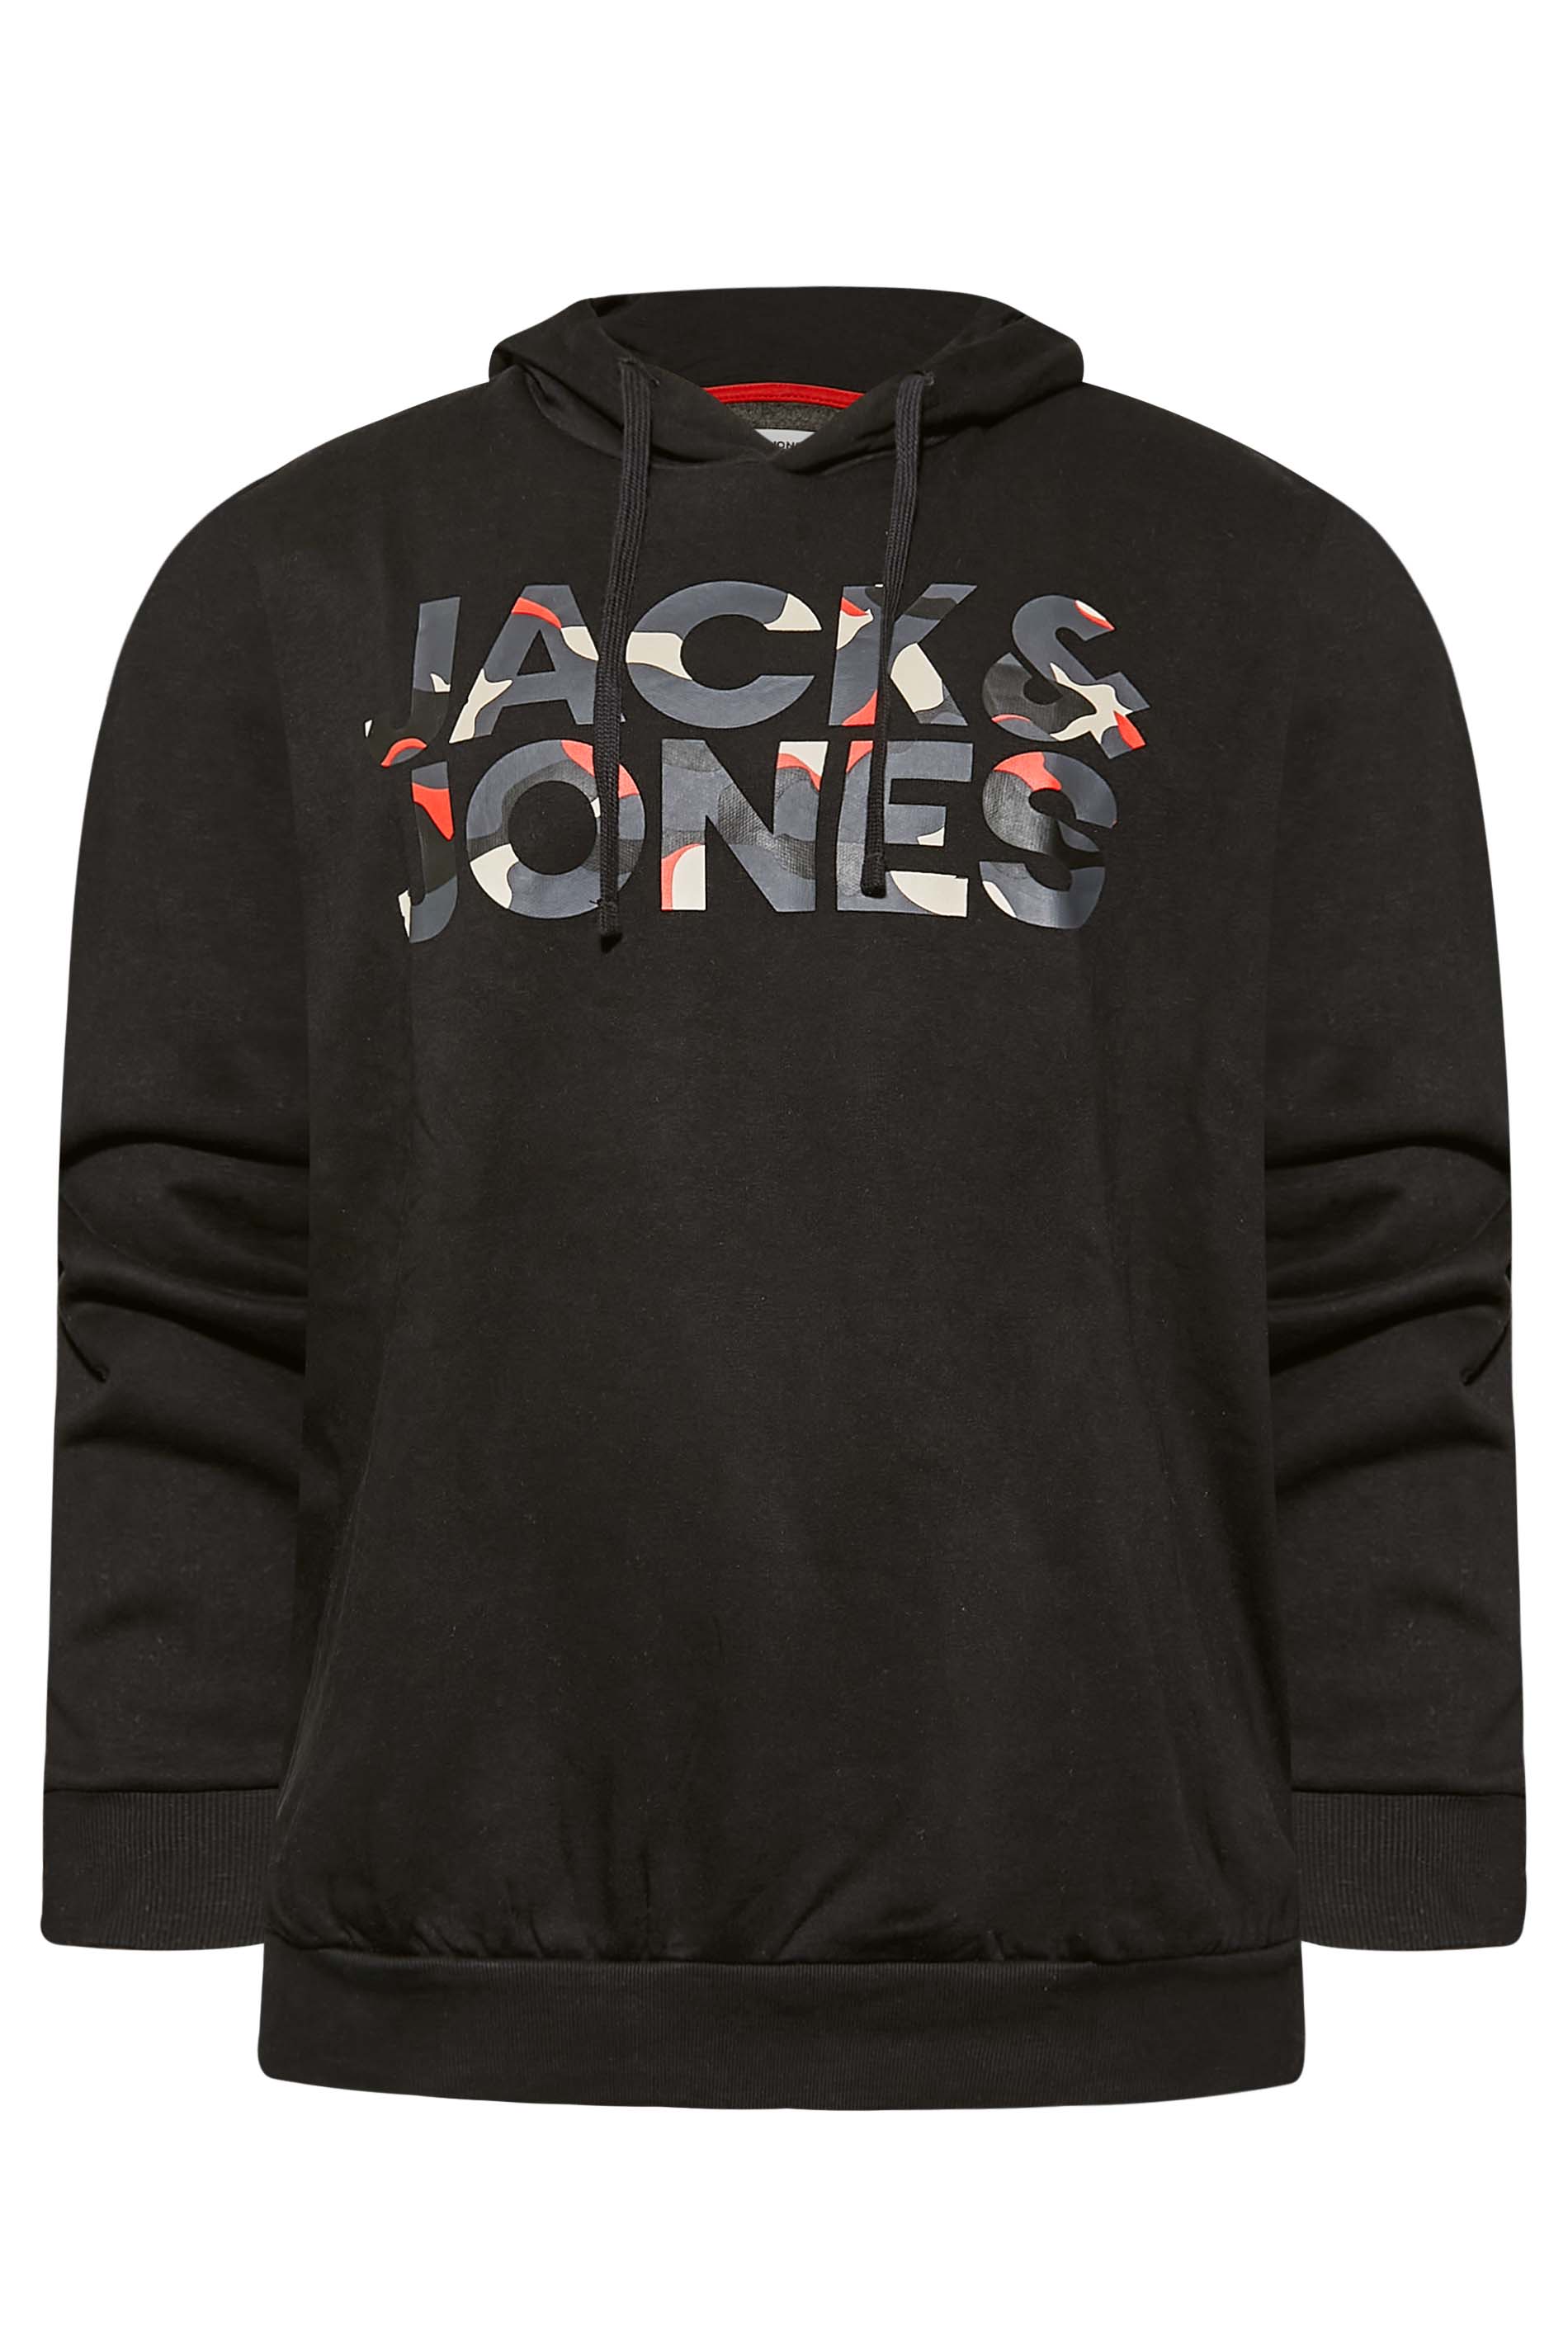 JACK & JONES Black Logo Hooded Sweatshirt | BadRhino 3